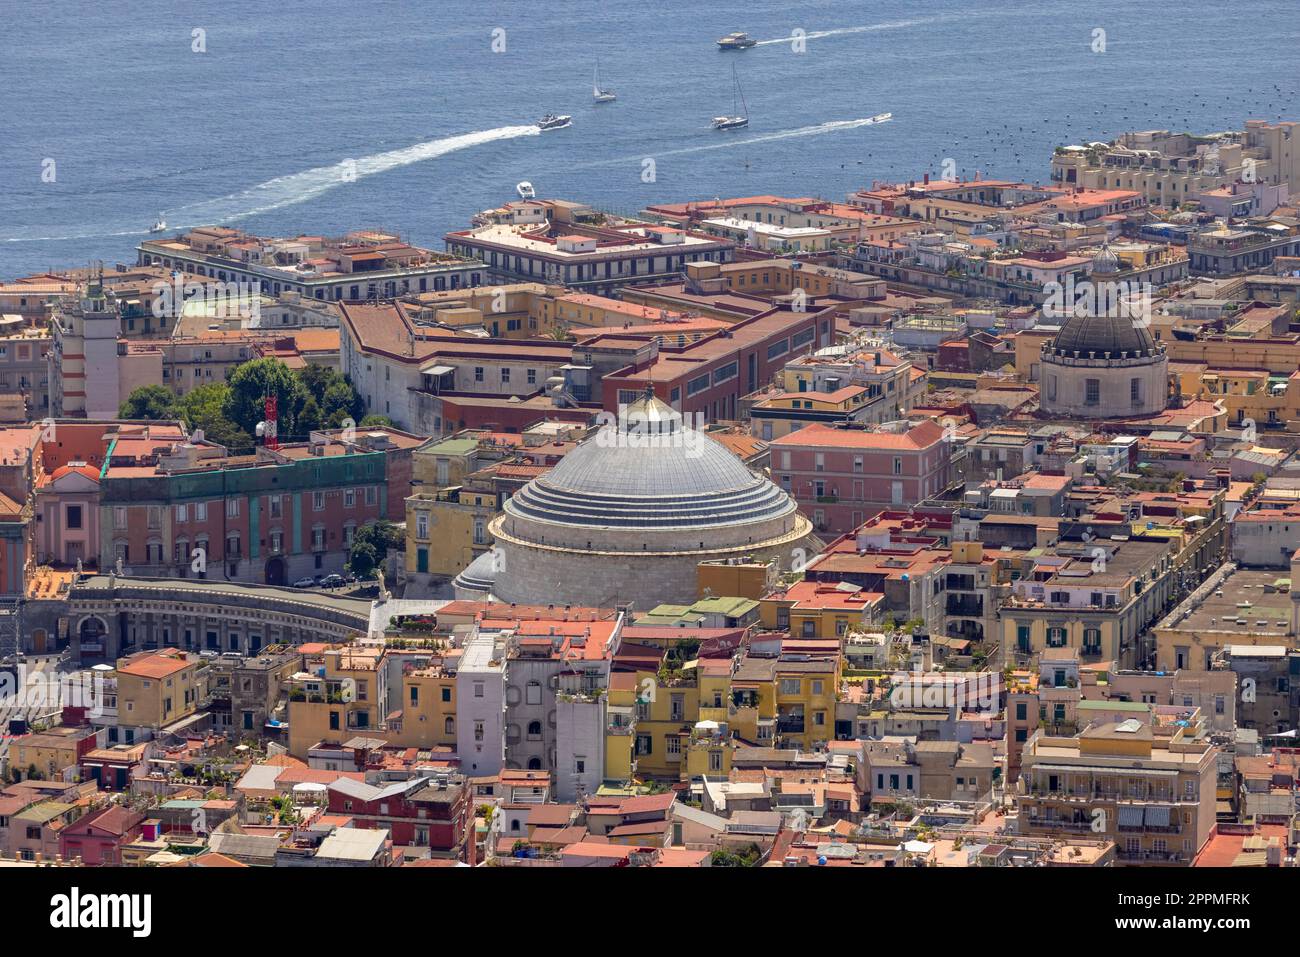 Vista aerea della città con edifici colorati e porto sul Mar Tirreno, Golfo di Napoli, Italia Foto Stock